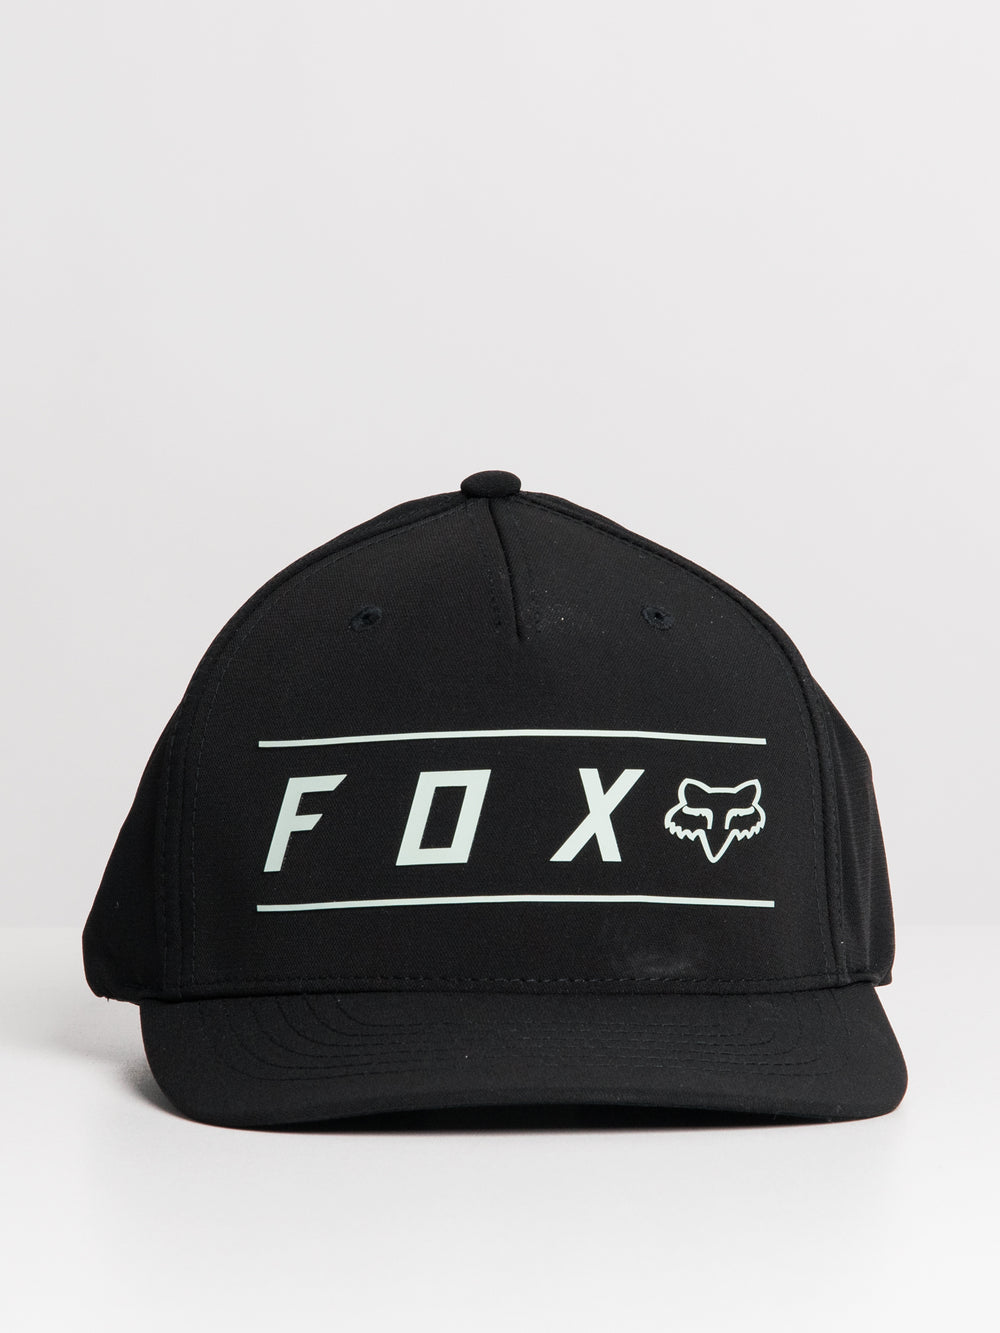 FOX PINNACLE TECH BLACK FLEX FIT HAT - CLEARANCE